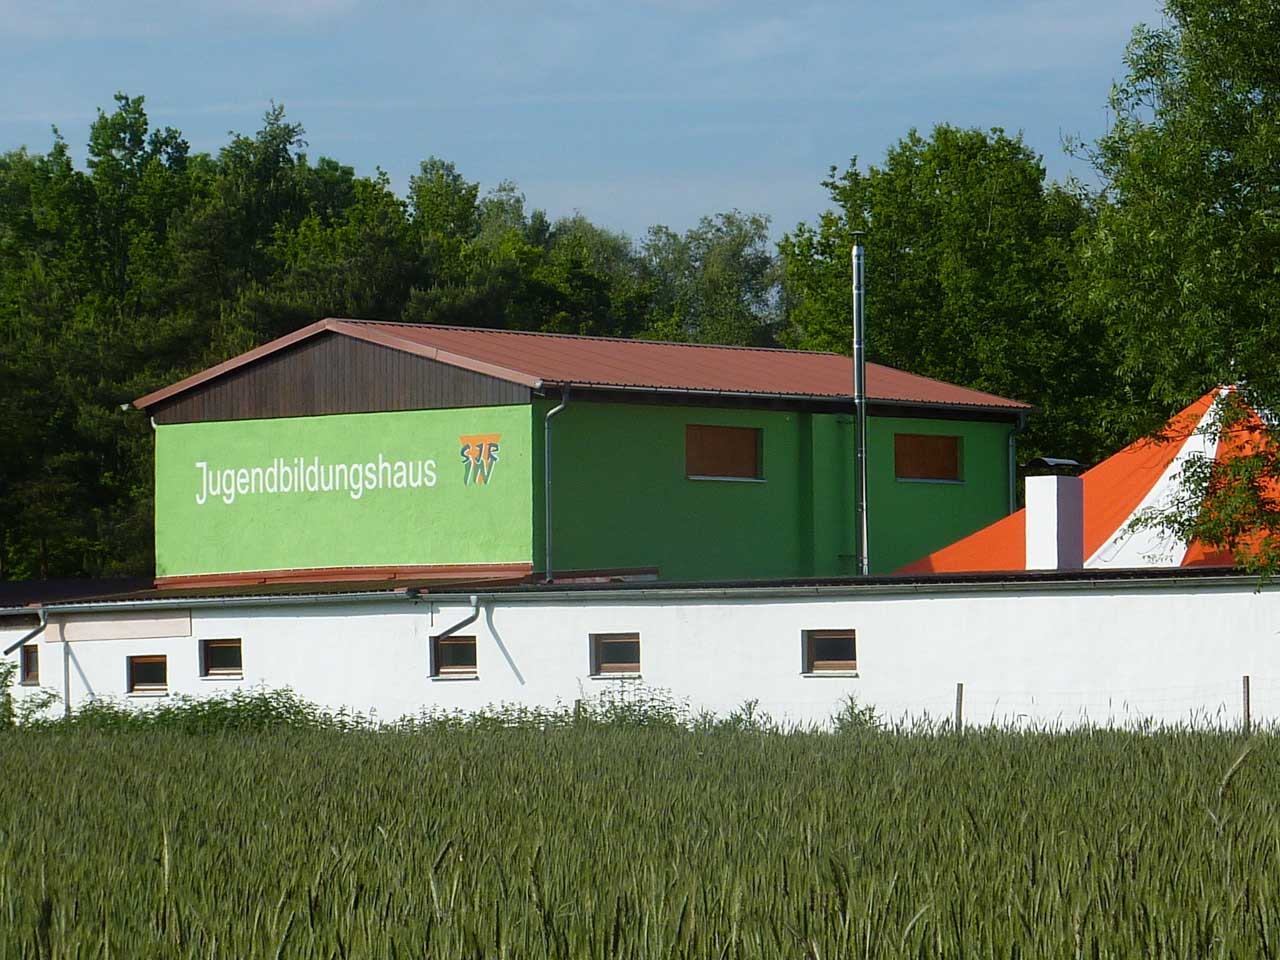 Jugendbildungshaus am Baggersee